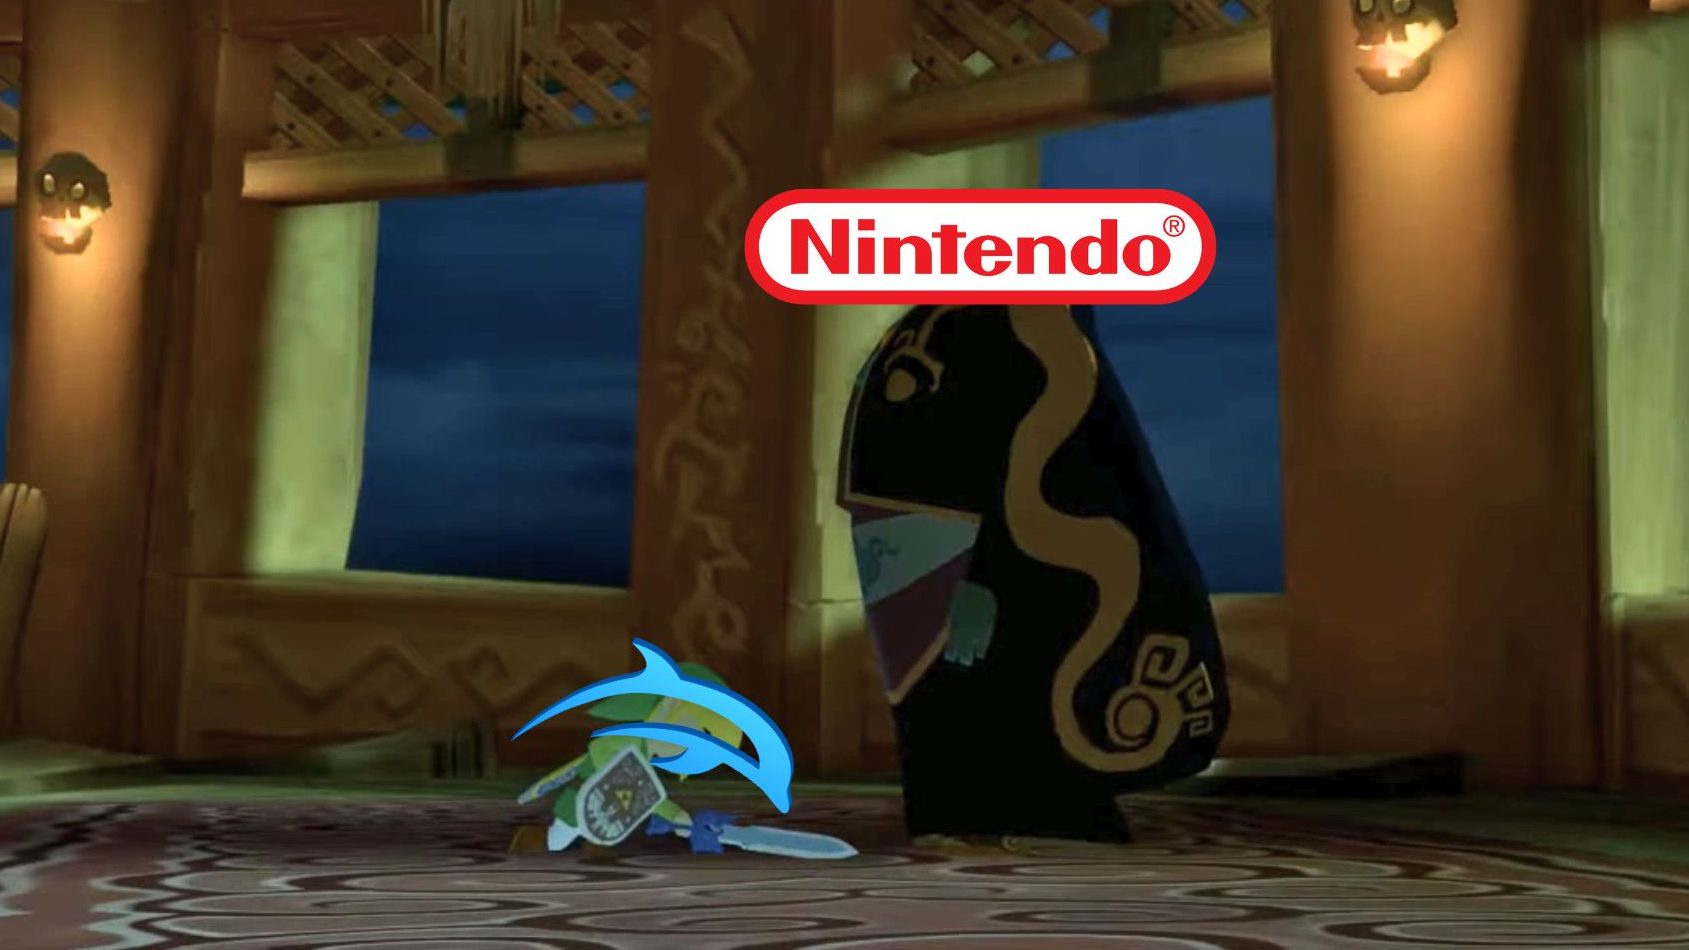 L’emulador Dolphin és retirat de Steam a causa d’una denúncia de Nintendo